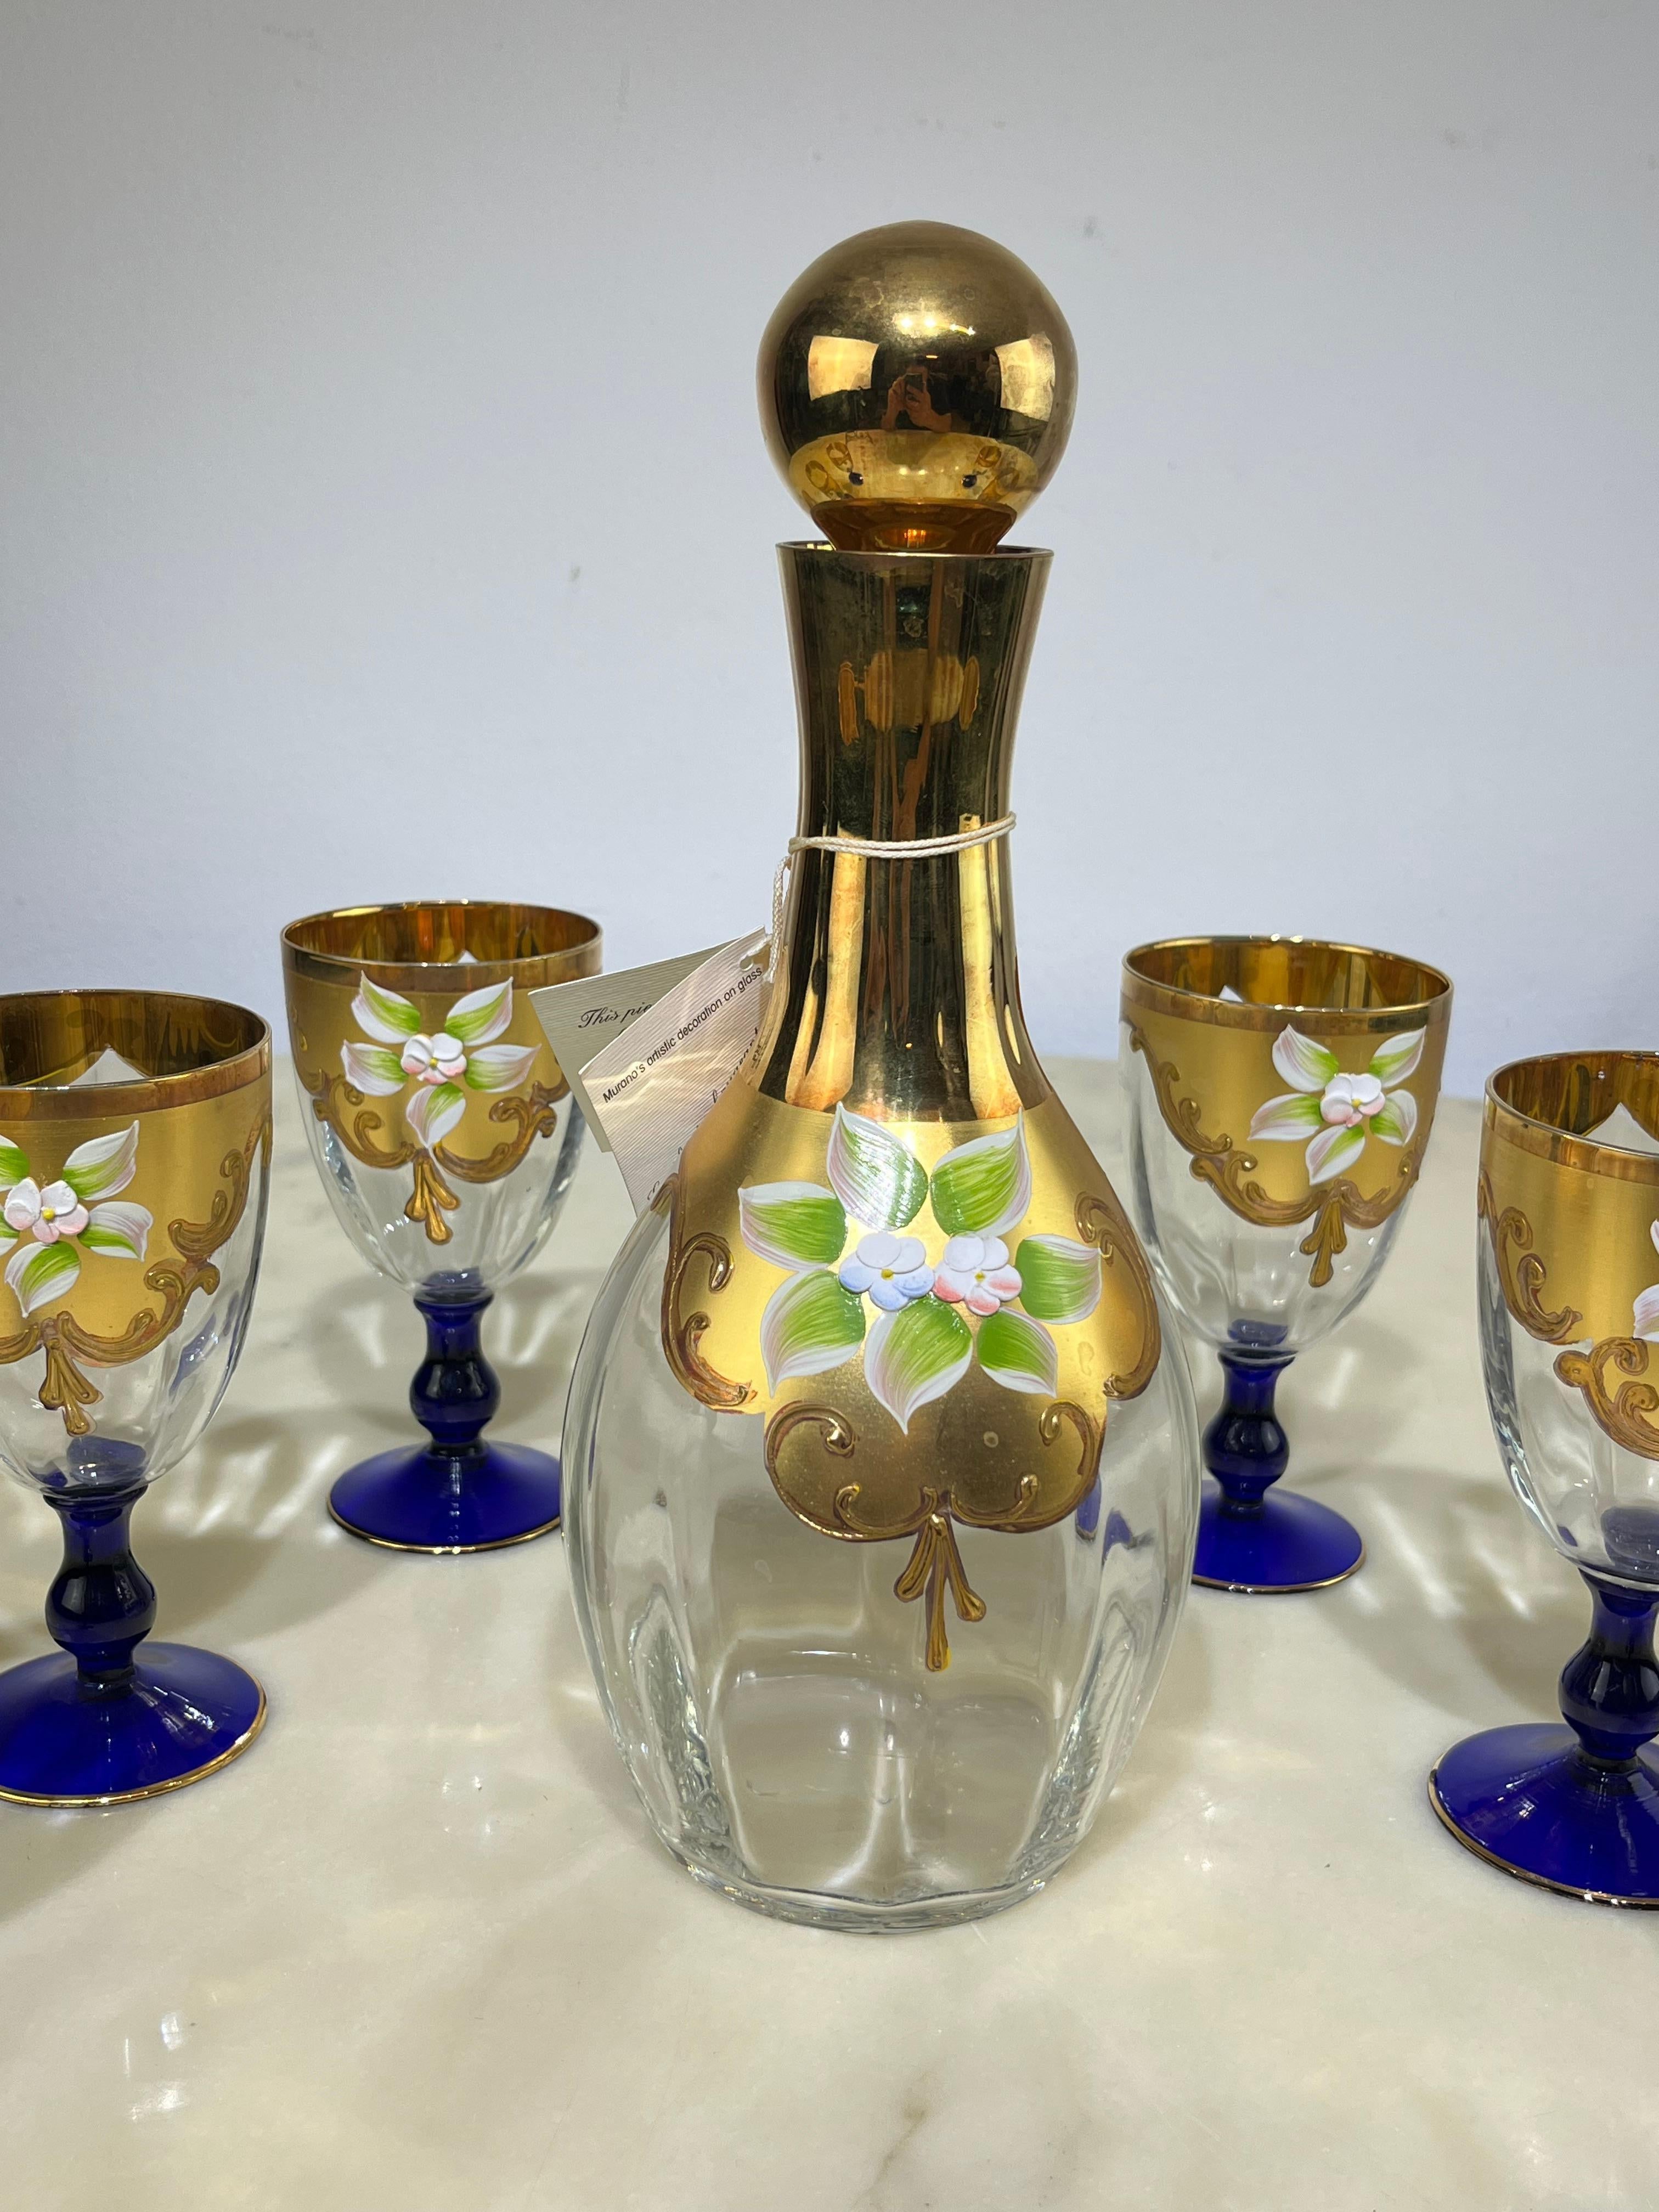 Ensemble de bouteille et six verres en verre de Murano peint à la main en or 24kt, Italie, années 1970.
Cadeau de mariage de mes grands-parents, œuvre de maîtres vénitiens. La bouteille mesure 28 cm de haut et 11 cm de diamètre. Les verres ont une